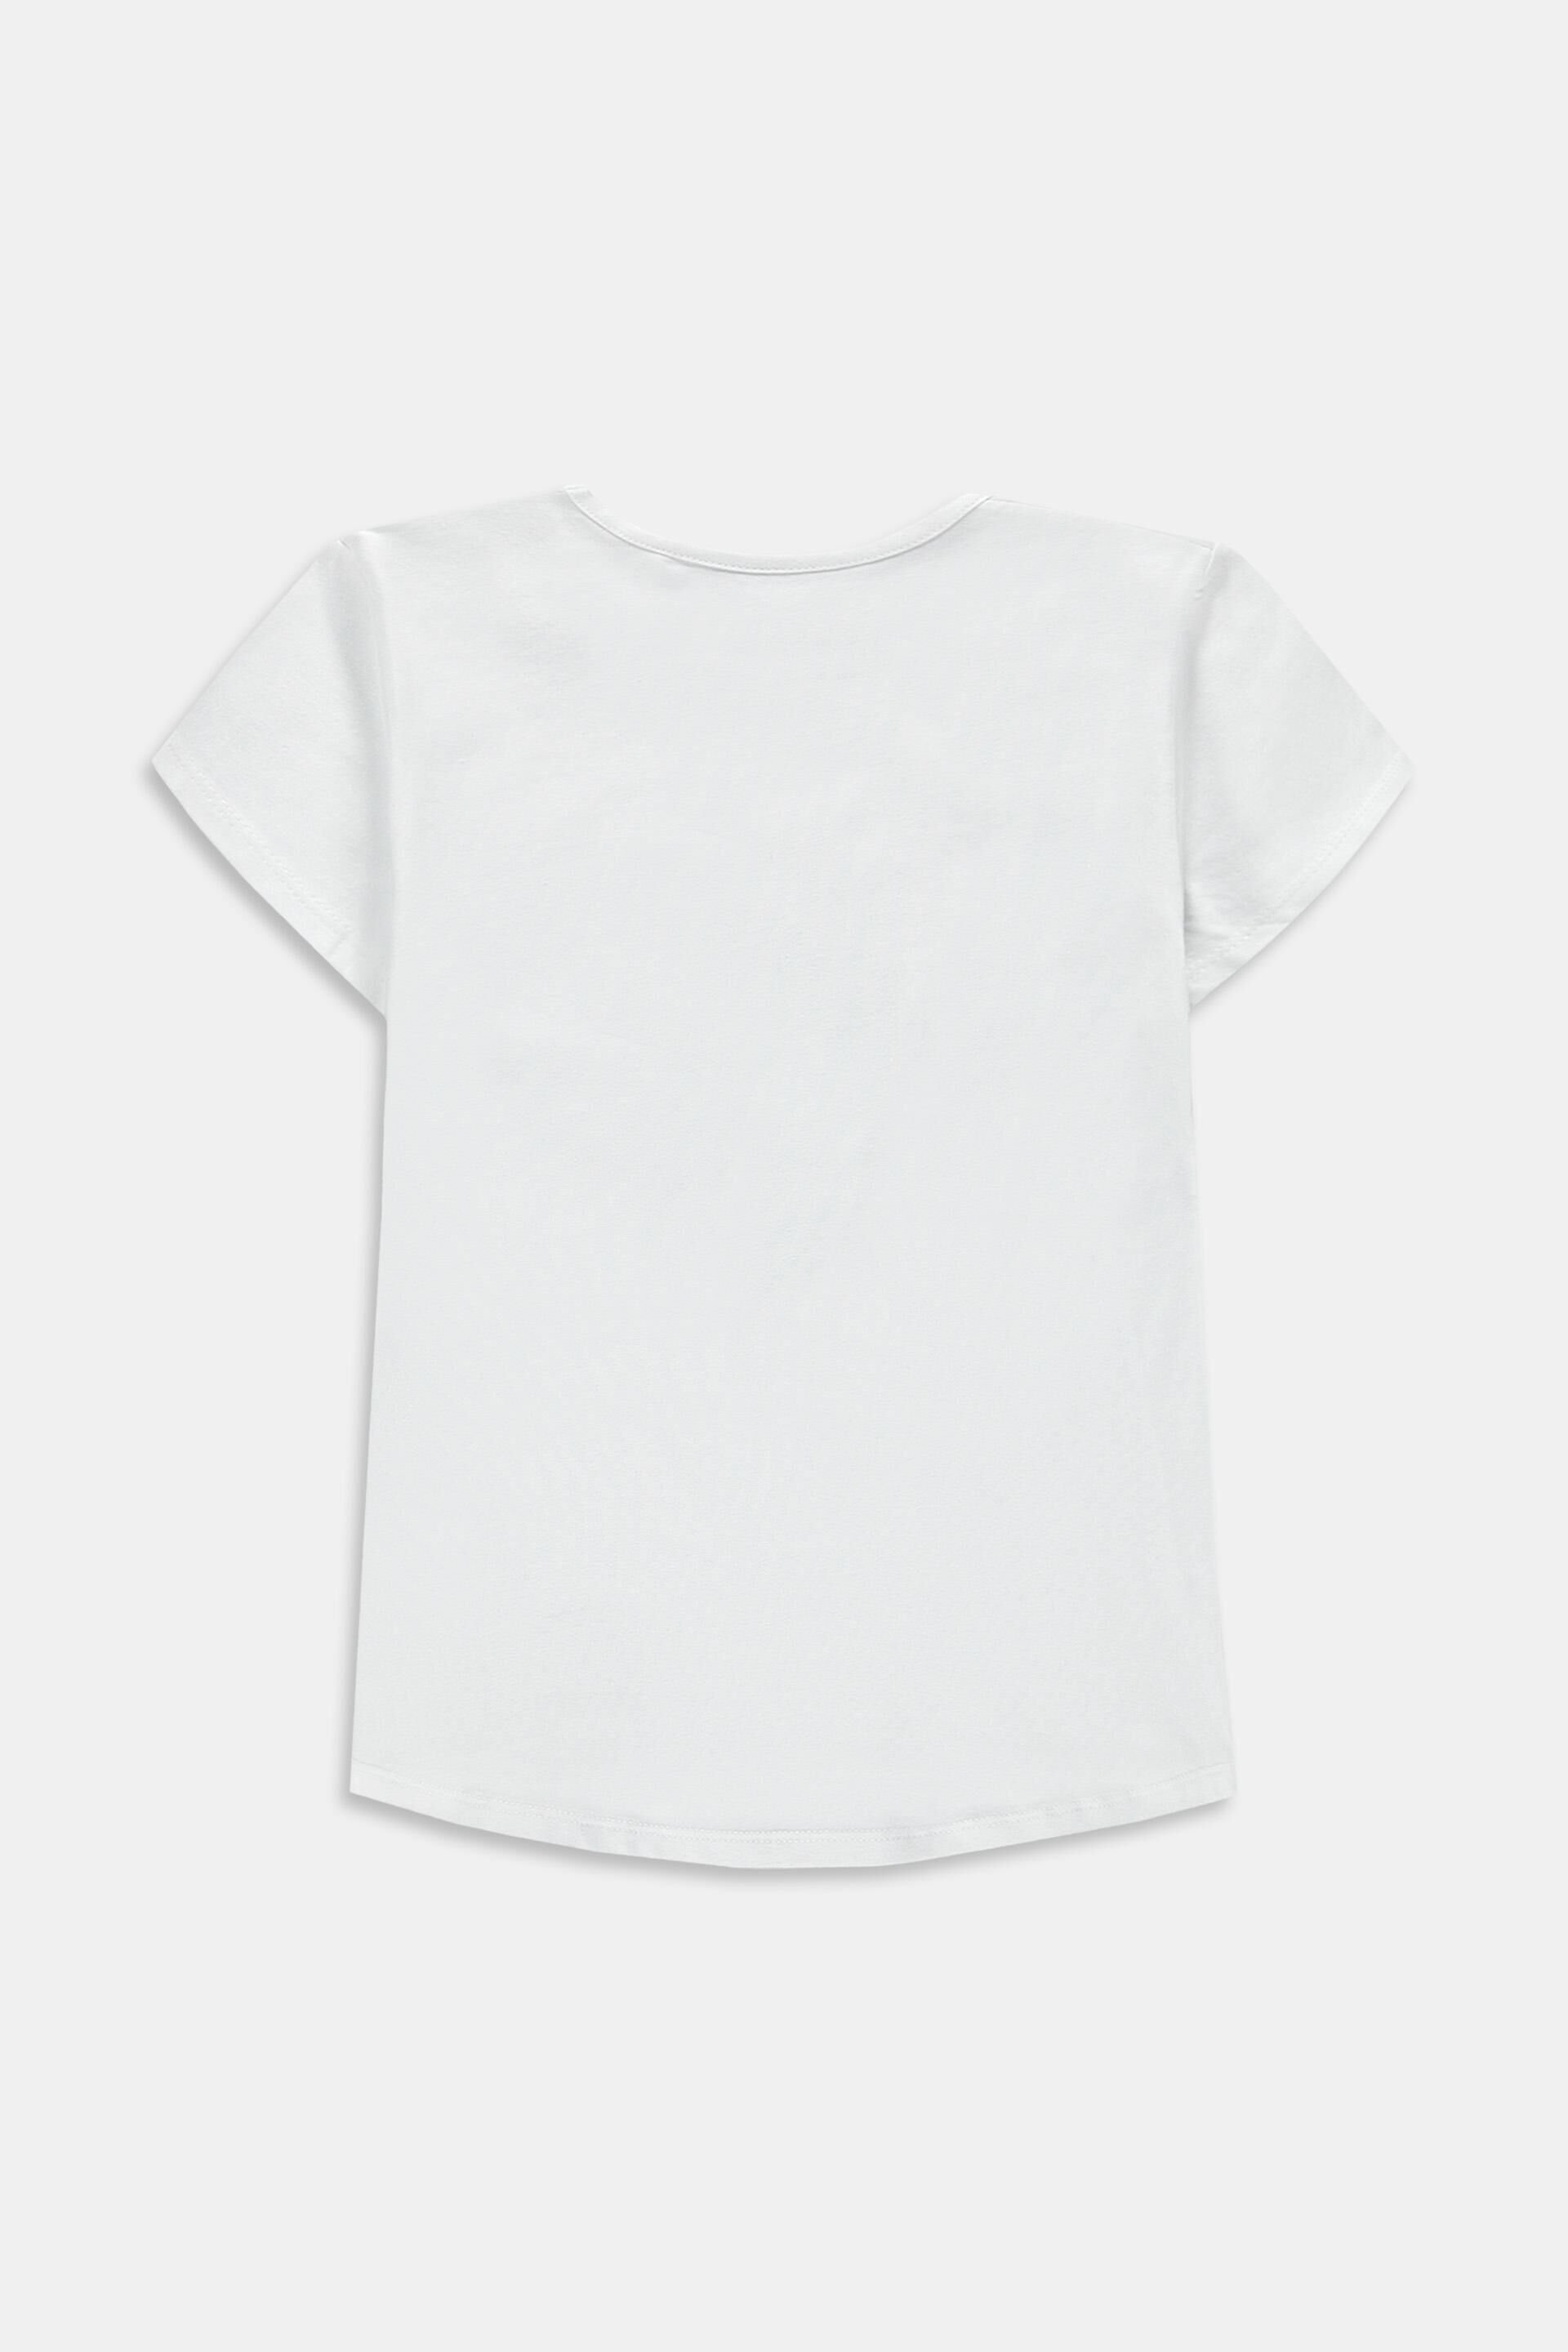 Esprit Outlet T-Shirts